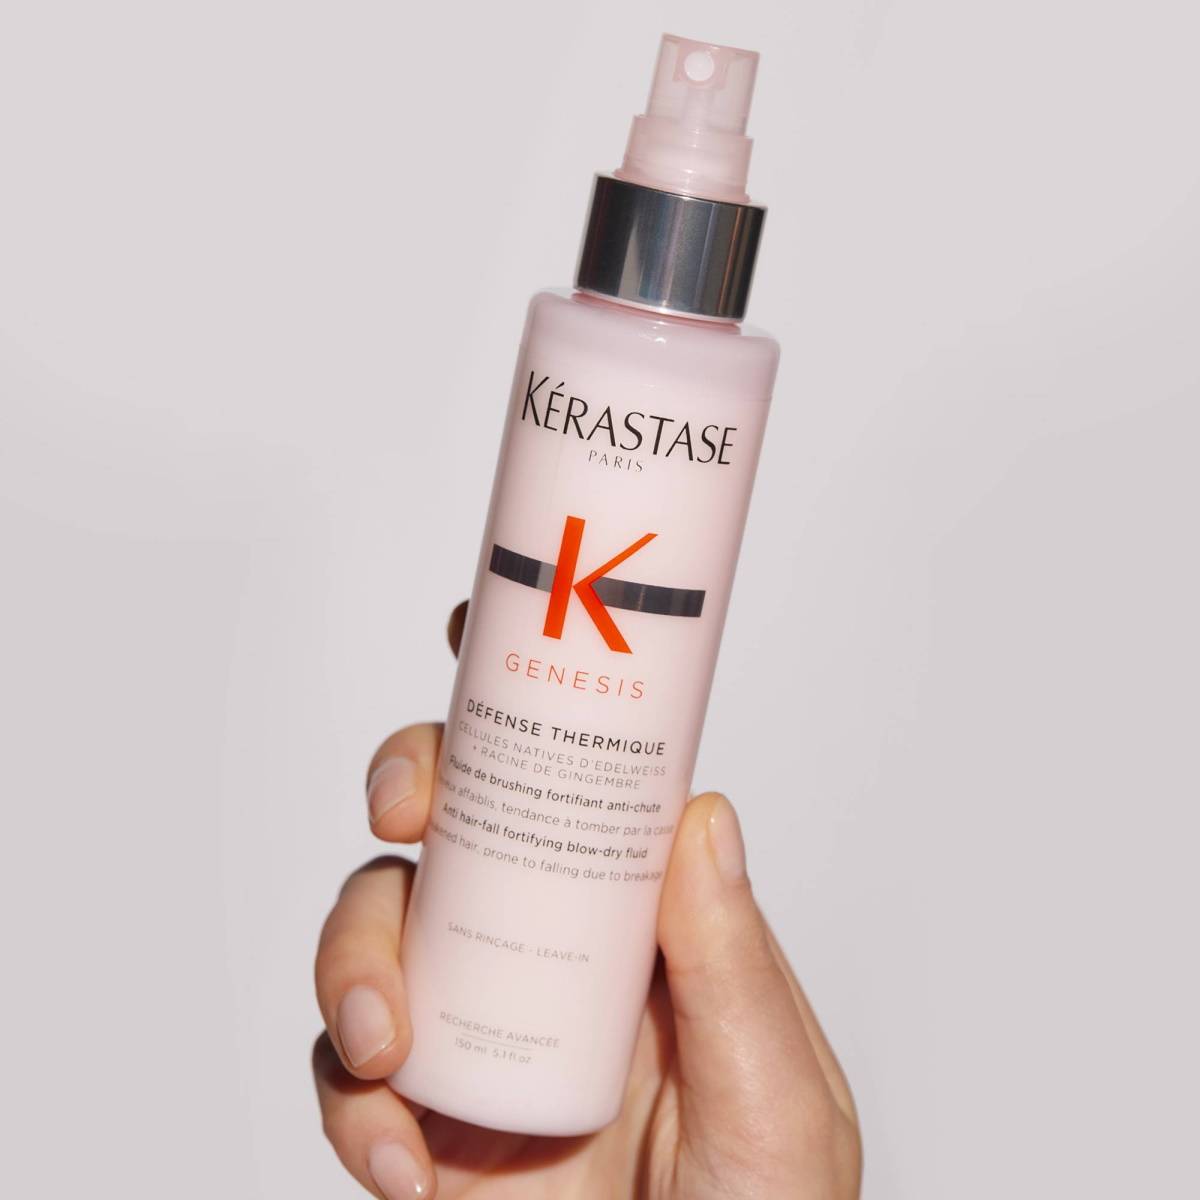 Kuracja Genesis Kérastase zatrzymuje wypadanie włosów. Linia Genesis marki Kérastase to gama holistycznych kosmetyków, które wzmocnią i odżywią włosy, a nawet uchronią je przed uszkodzeniami mechanicznymi.